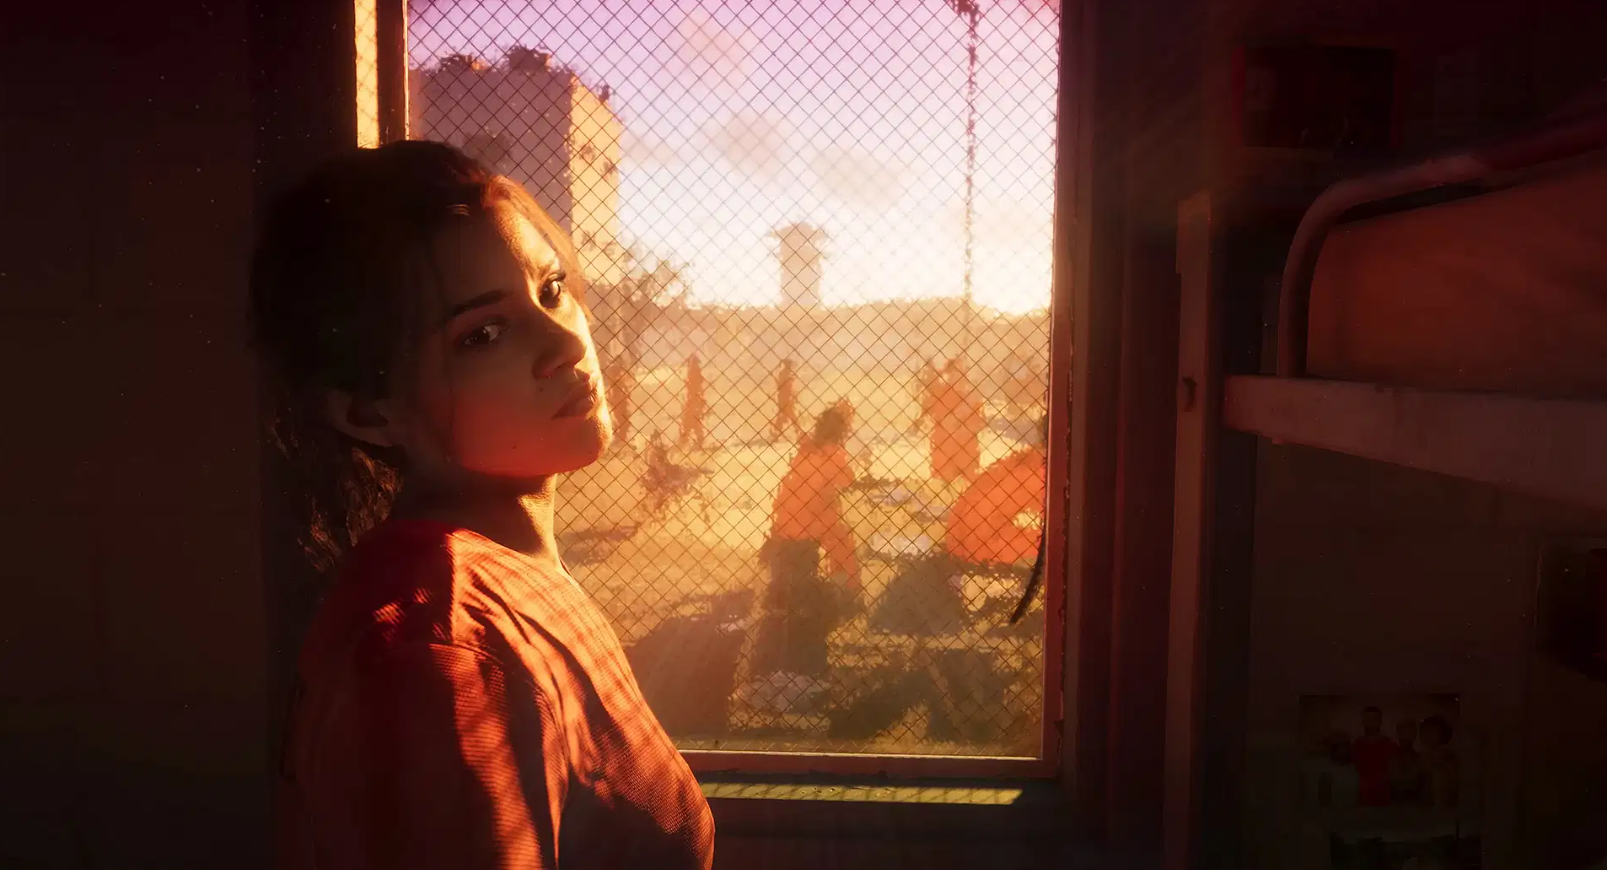 Lucia bohaterka gry GTA 6 patrzy przez siatkowe okno na zachód słońca, w tle widać sylwetki ludzi za ogrodzeniem.